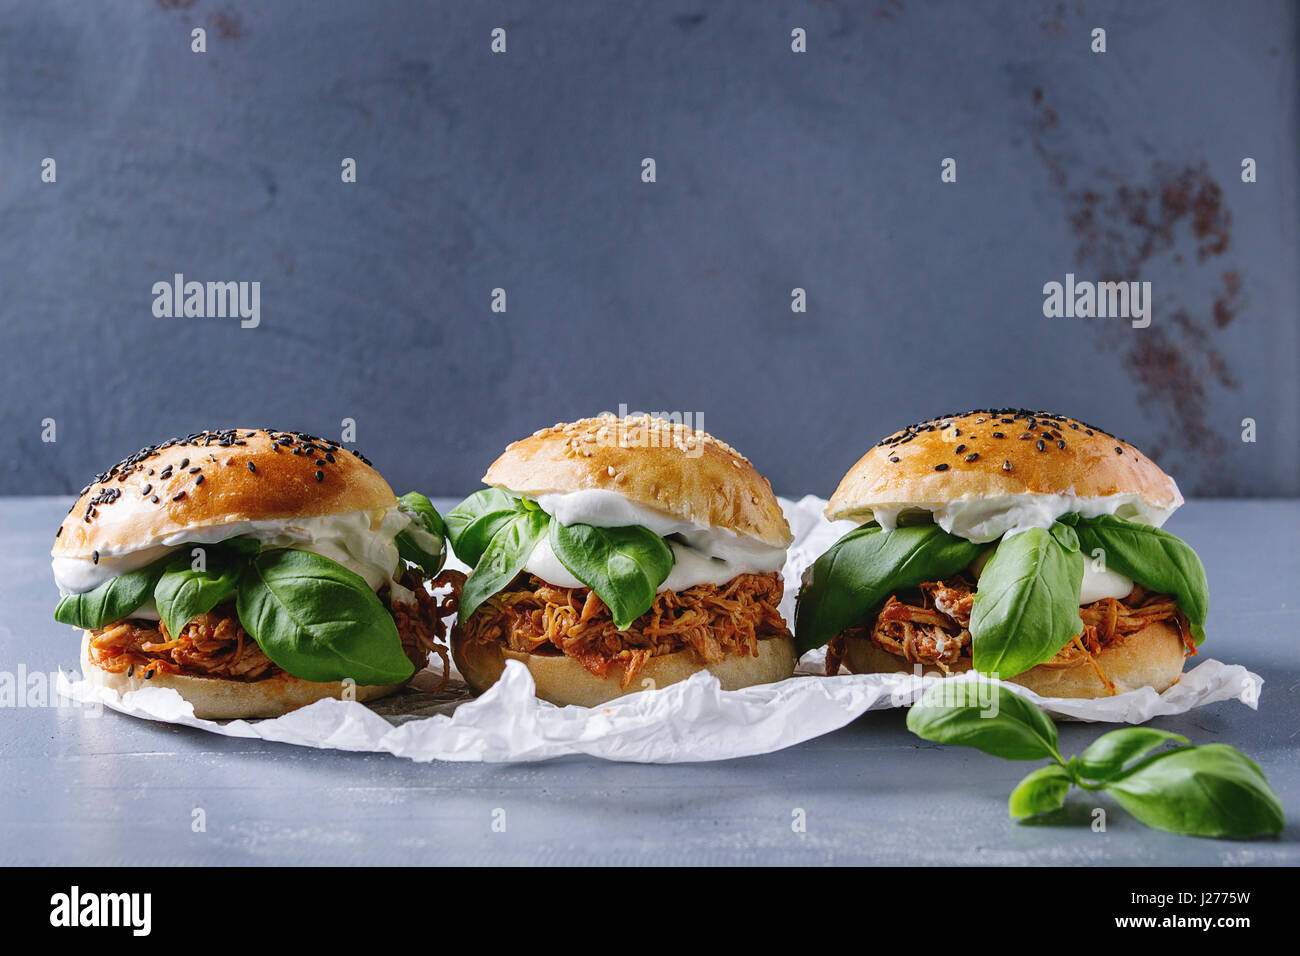 Hausgemachte Mini-Burger mit gezogener Huhn, Basilikum, Mozzarella-Käse und Joghurt-Sauce auf Backpapier über graue Textur Hintergrund. Gesundes Fast Food c Stockfoto